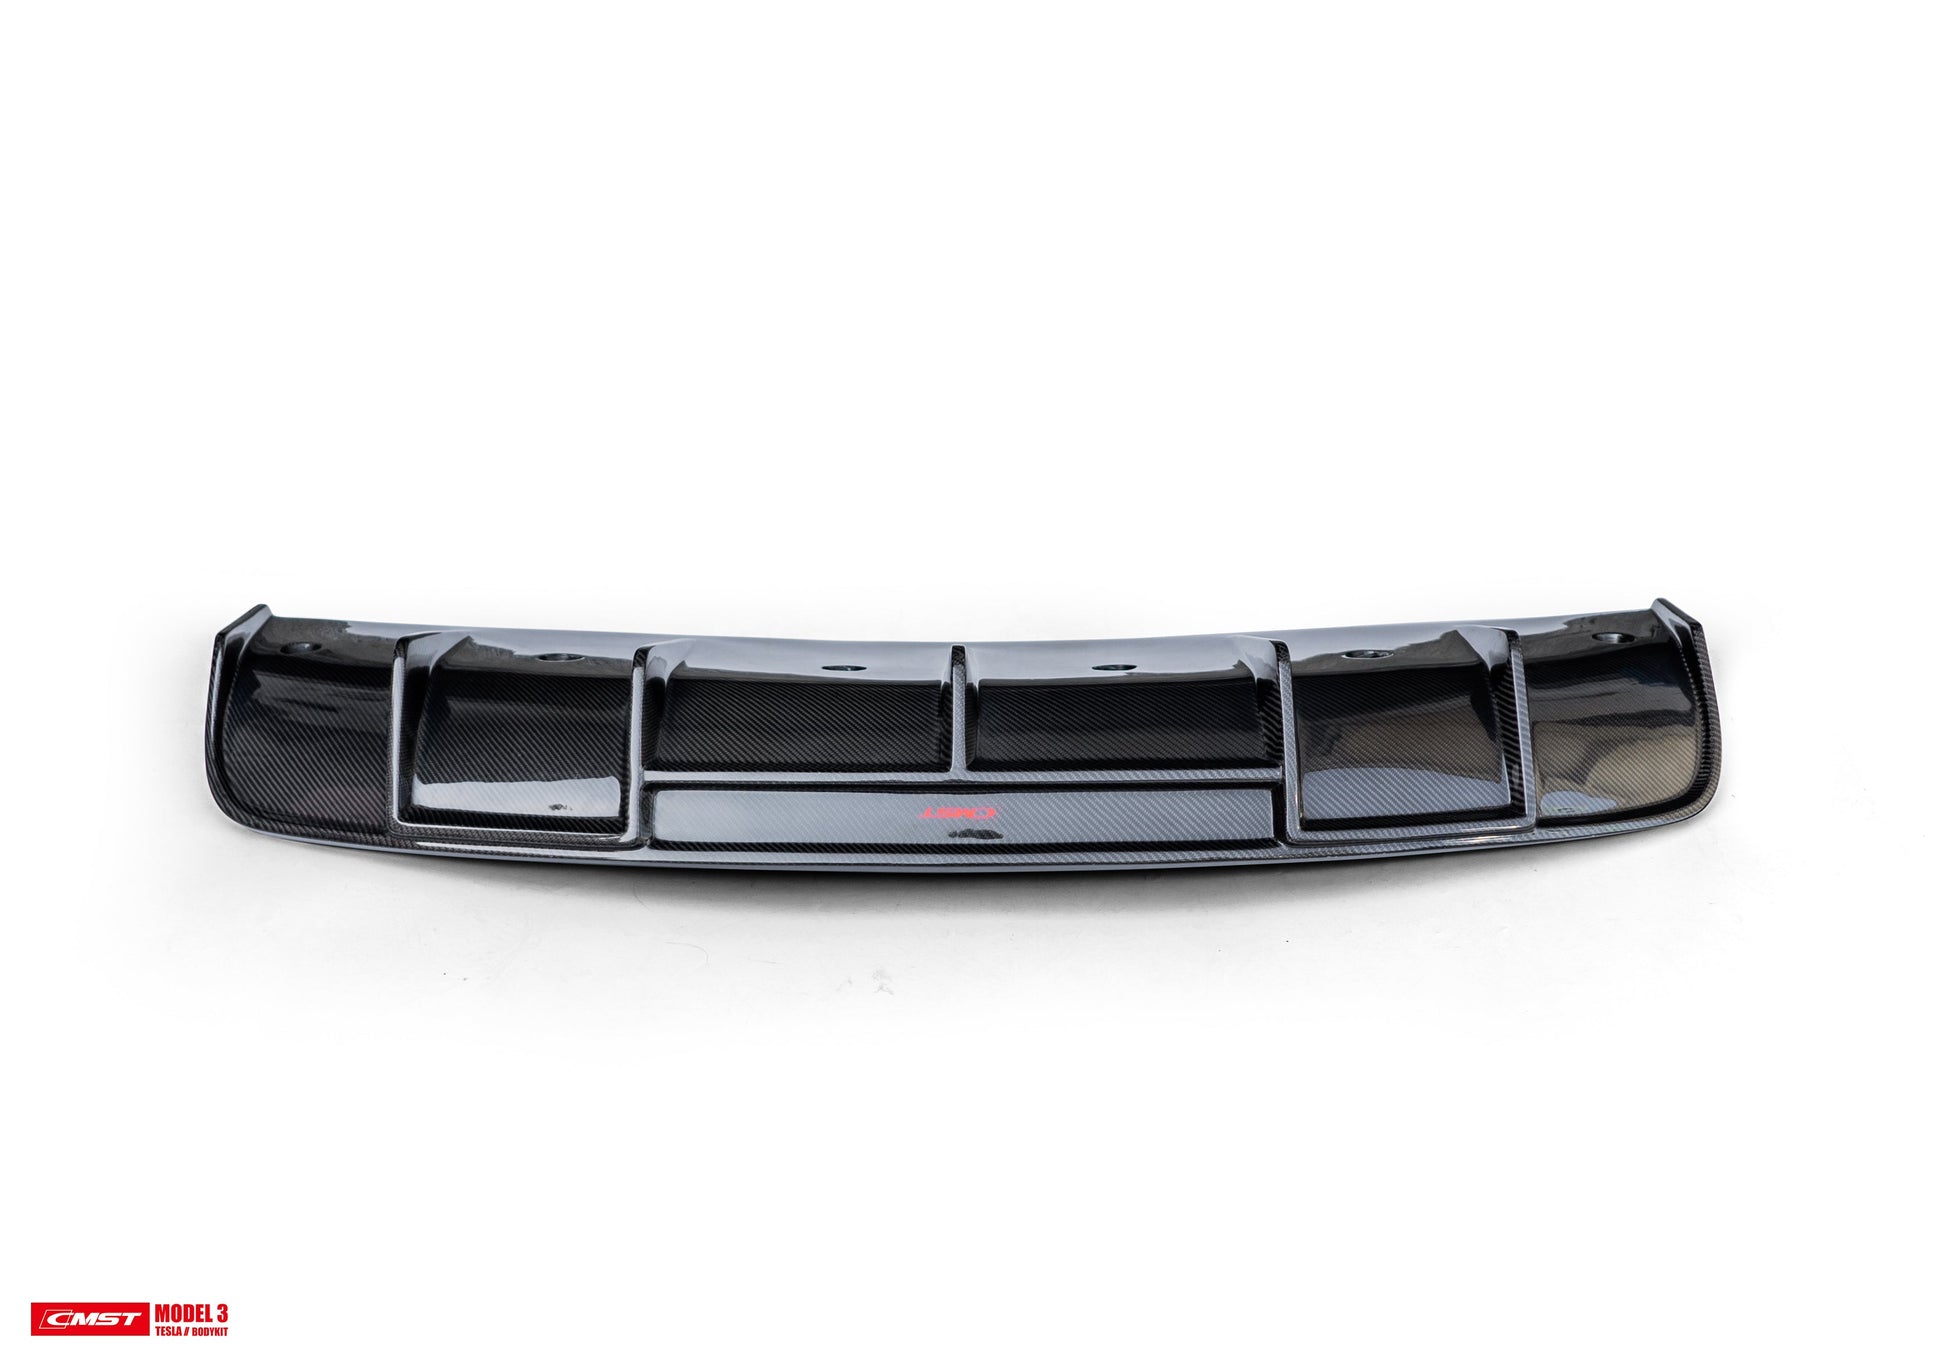 TESERY×CMST Tesla Model 3 Carbon Fiber Rear Diffuser Ver.1 - Tesery Official Store